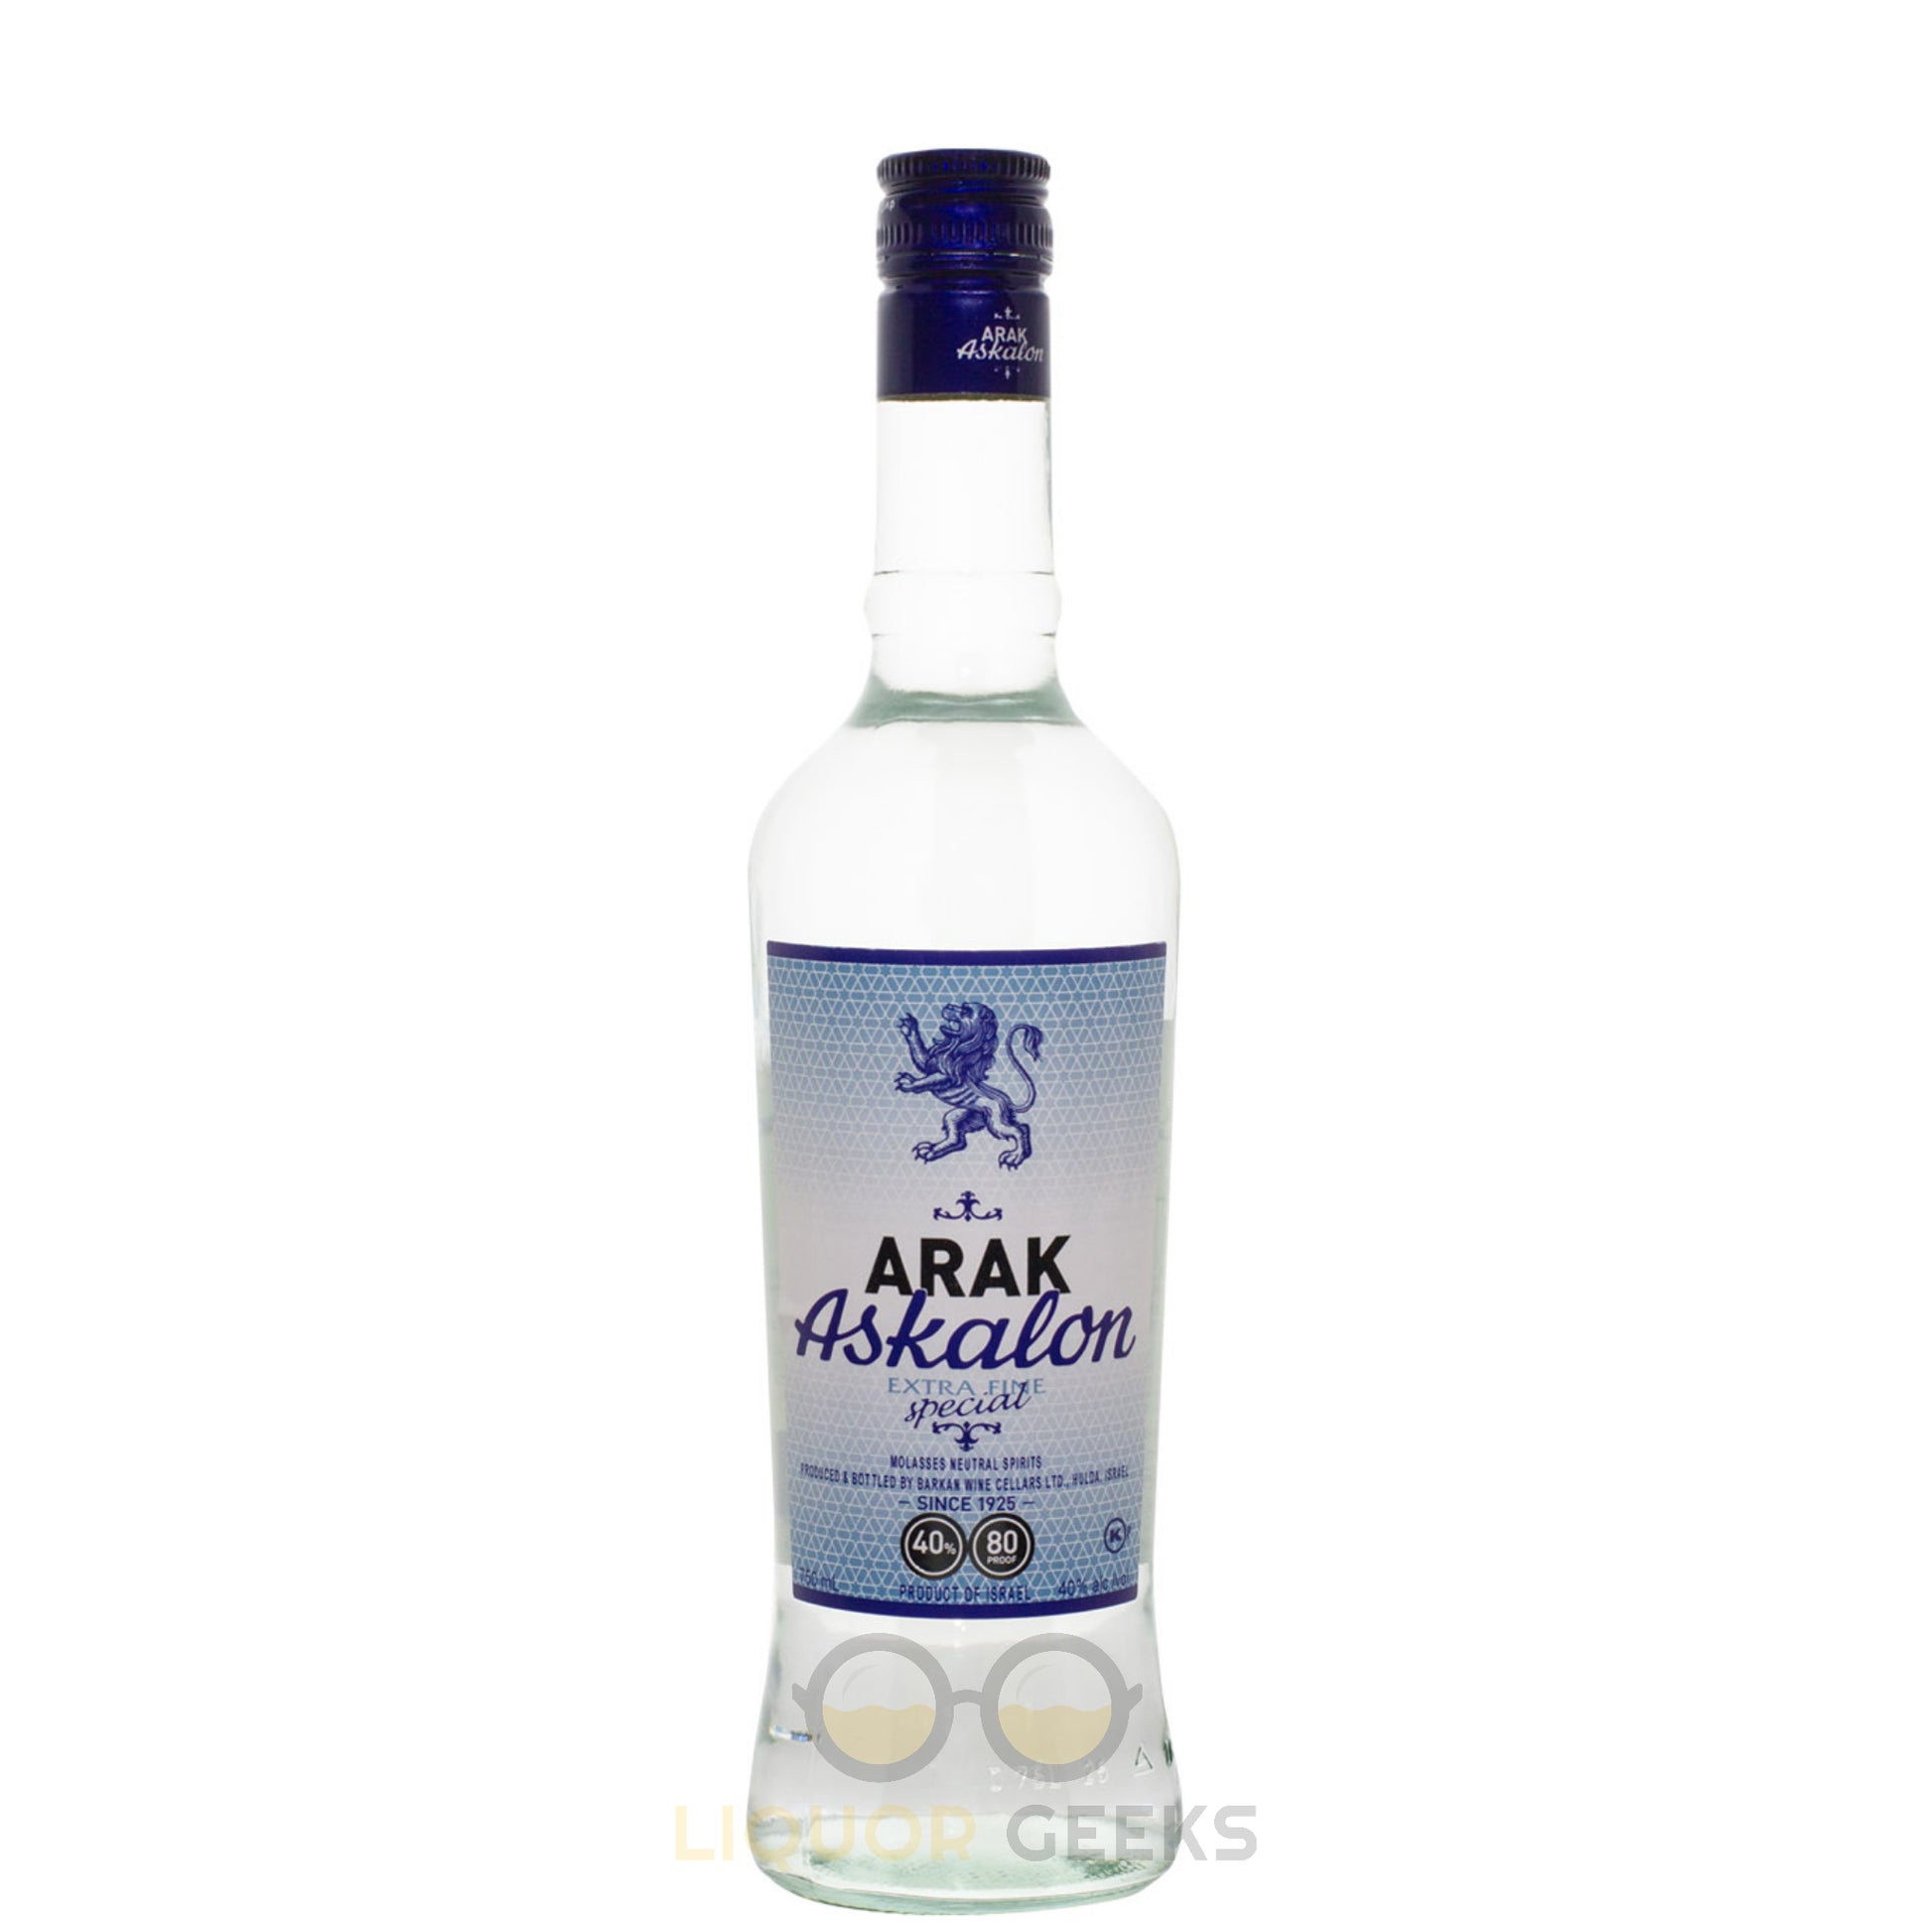 Askalon Arack Extra Fine Special - Liquor Geeks